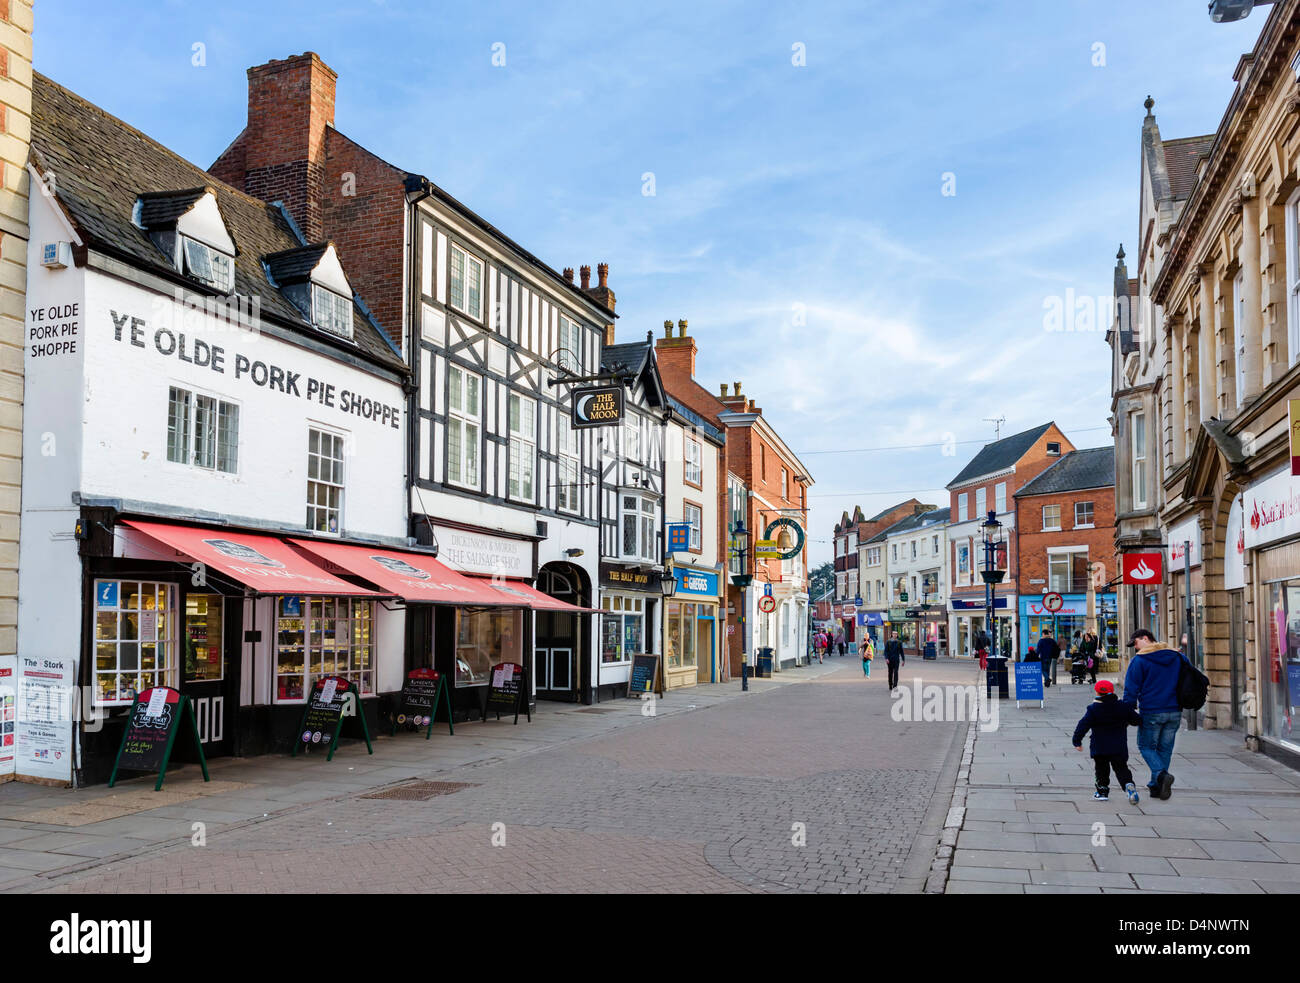 Nottingham-Straße im Zentrum Stadt mit Ye Olde Pork Pie Shoppe auf der linken Seite, Melton Mowbray, Leicestershire, UK Stockfoto